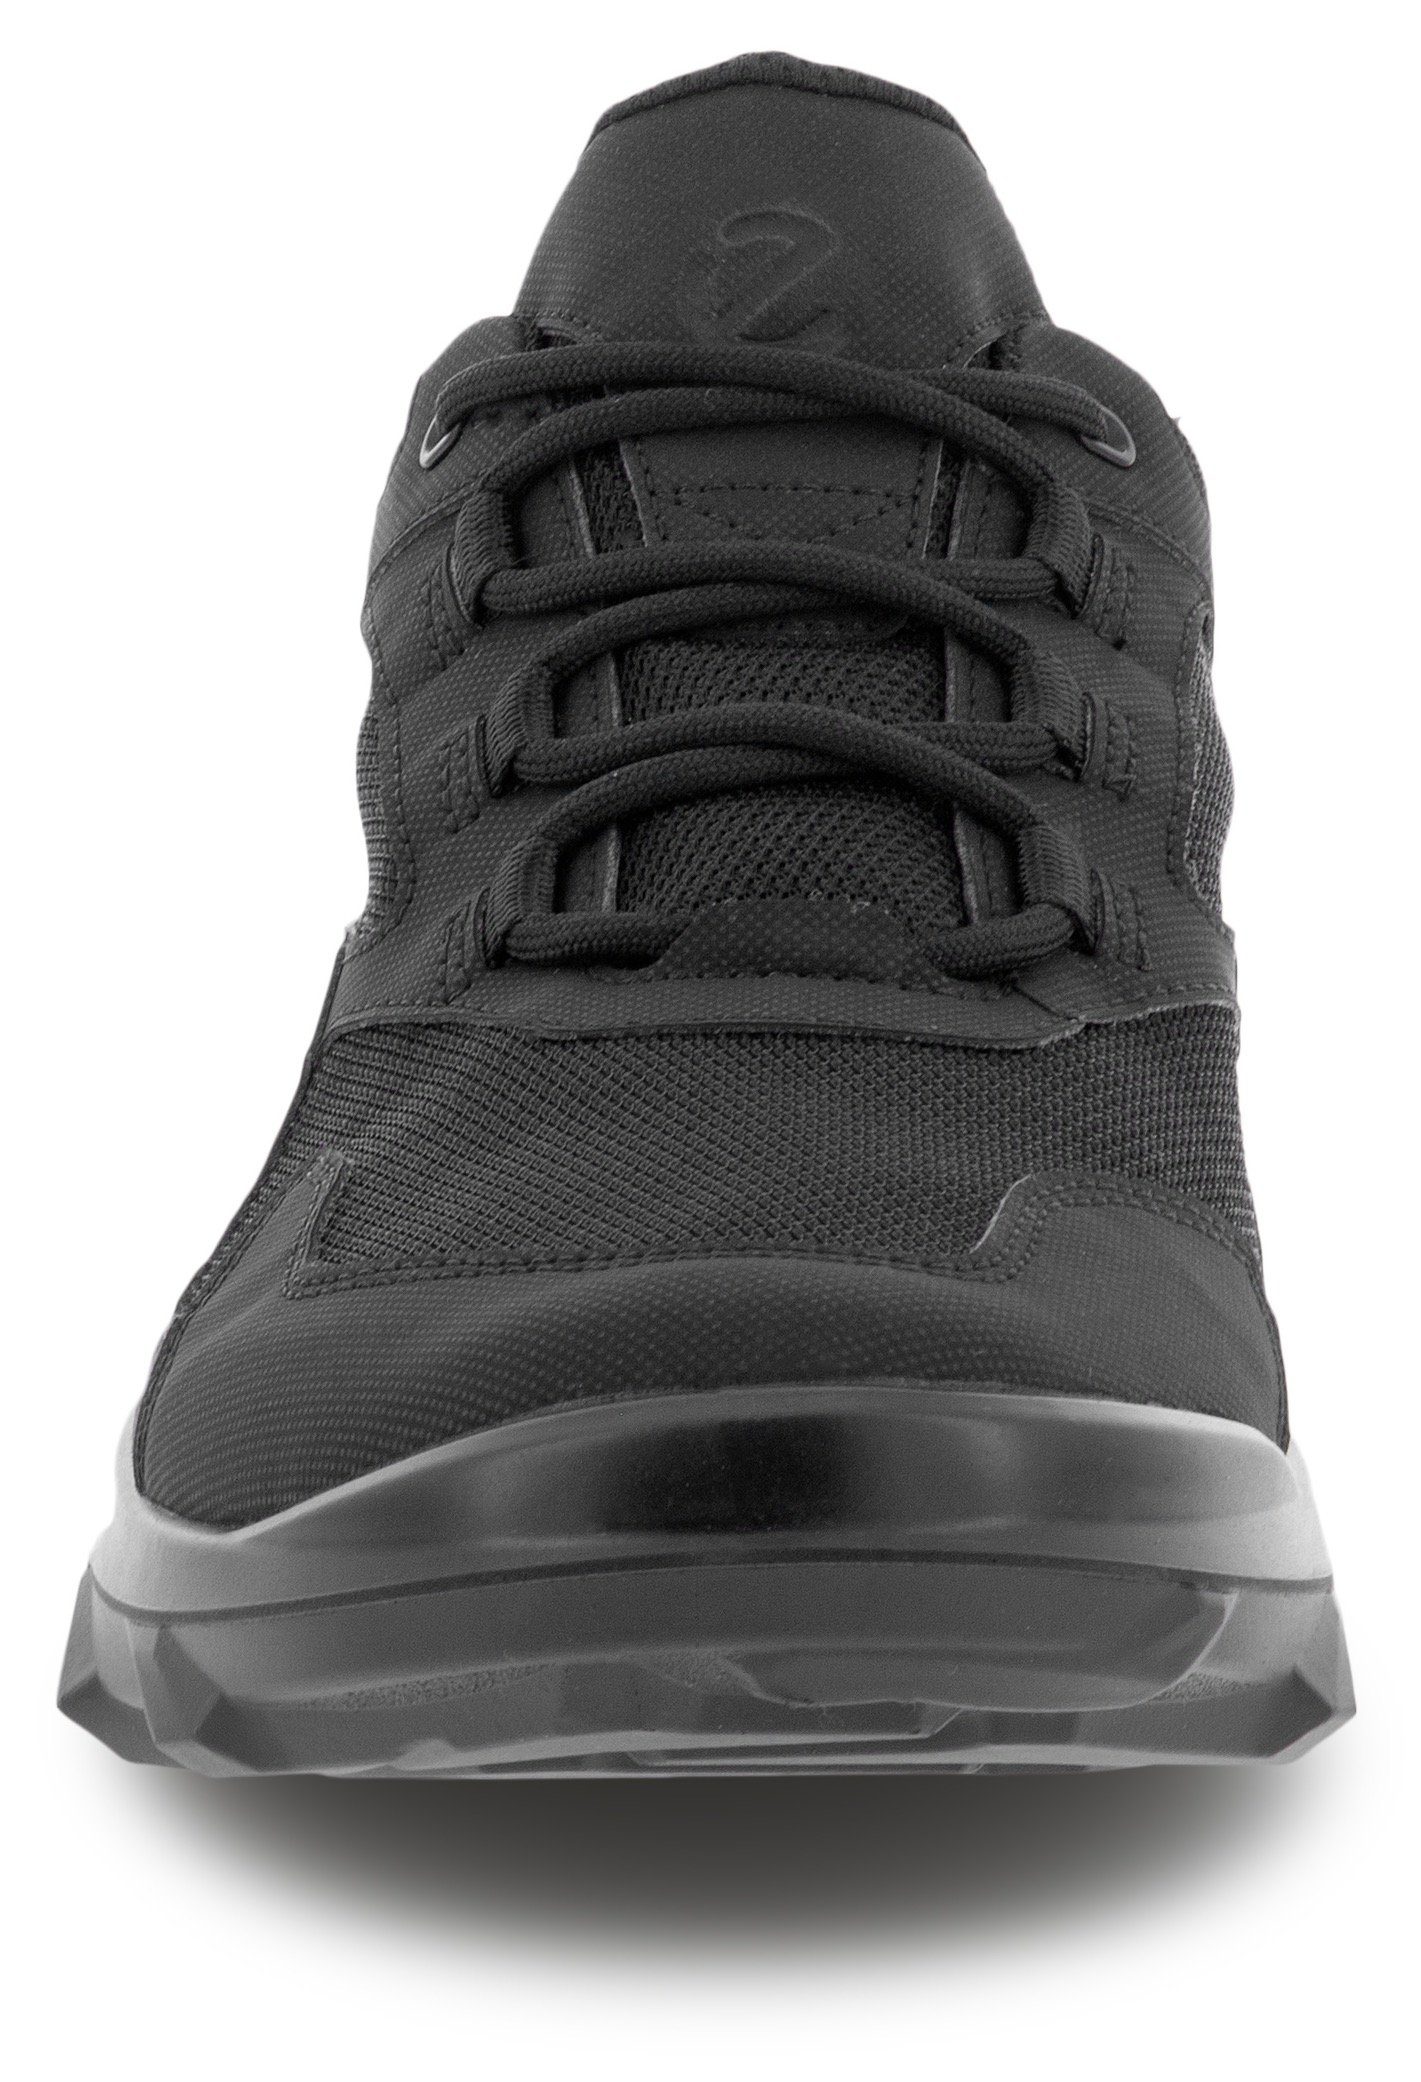 GORE-TEX M Ausstattung Ecco mit wasserdichter MX black/black Sneaker Slip-On